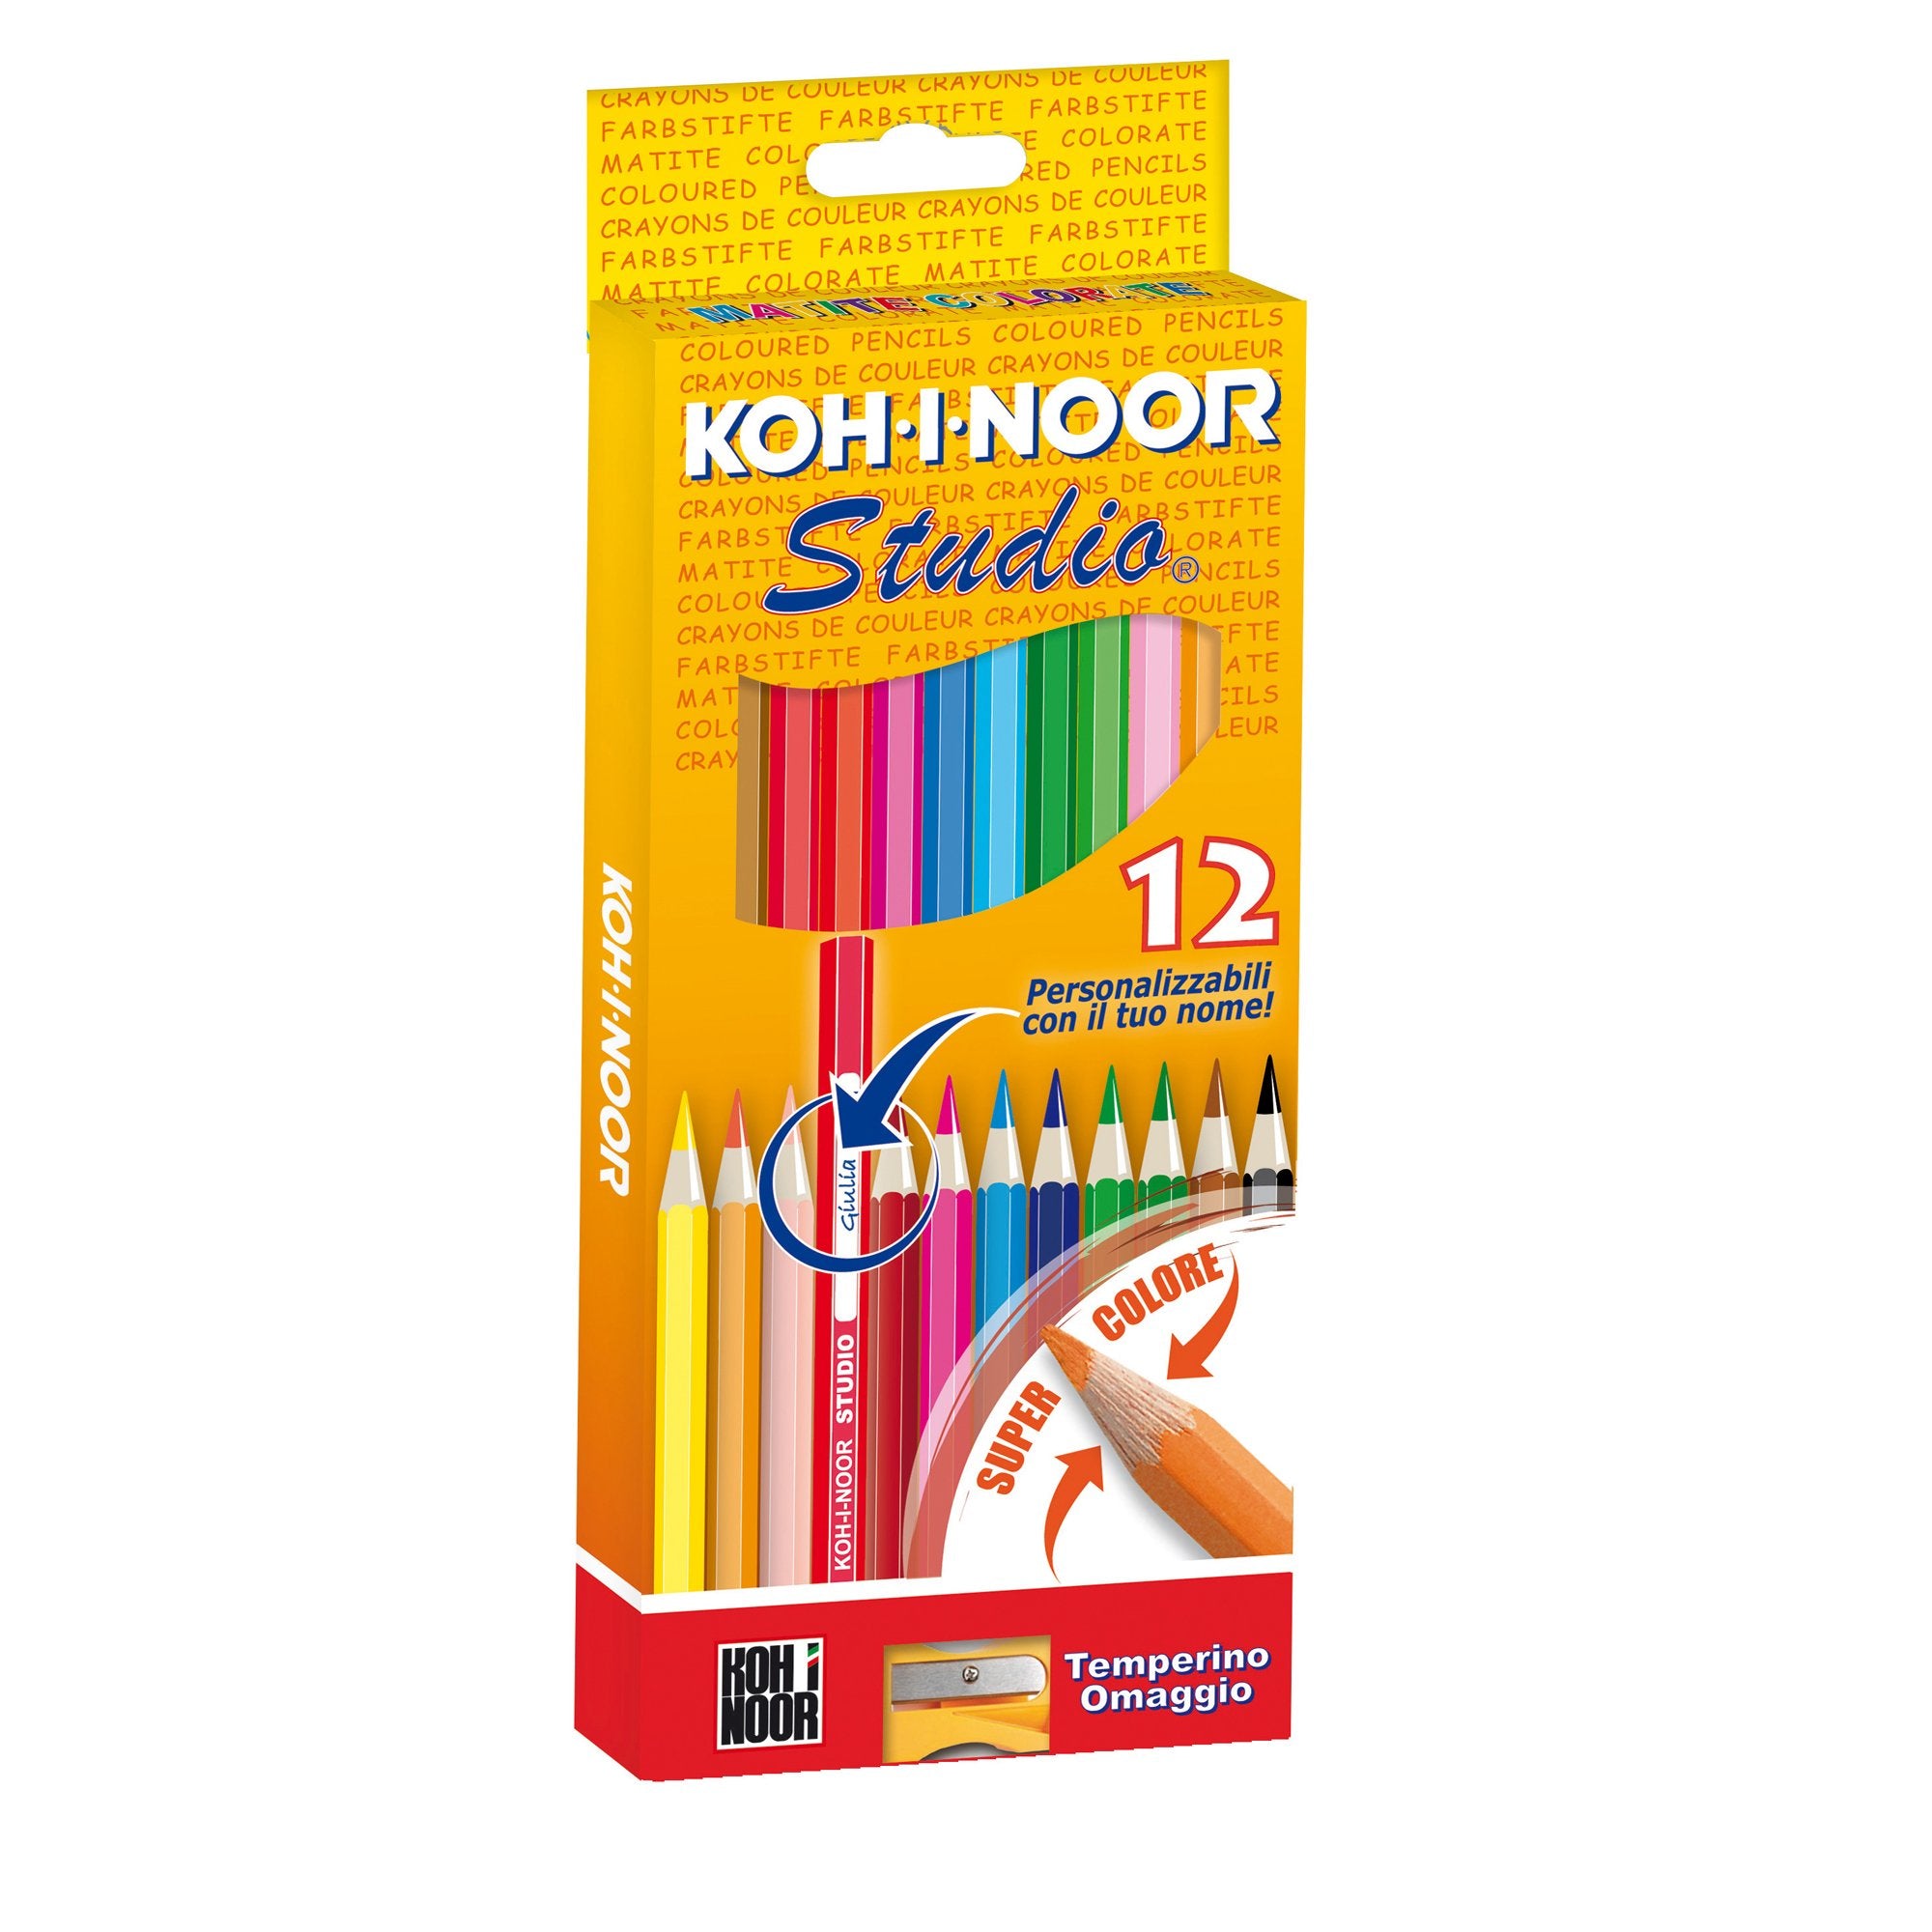 koh-i-noor-astuccio-12-matite-colorate-studio-koh-i-noor